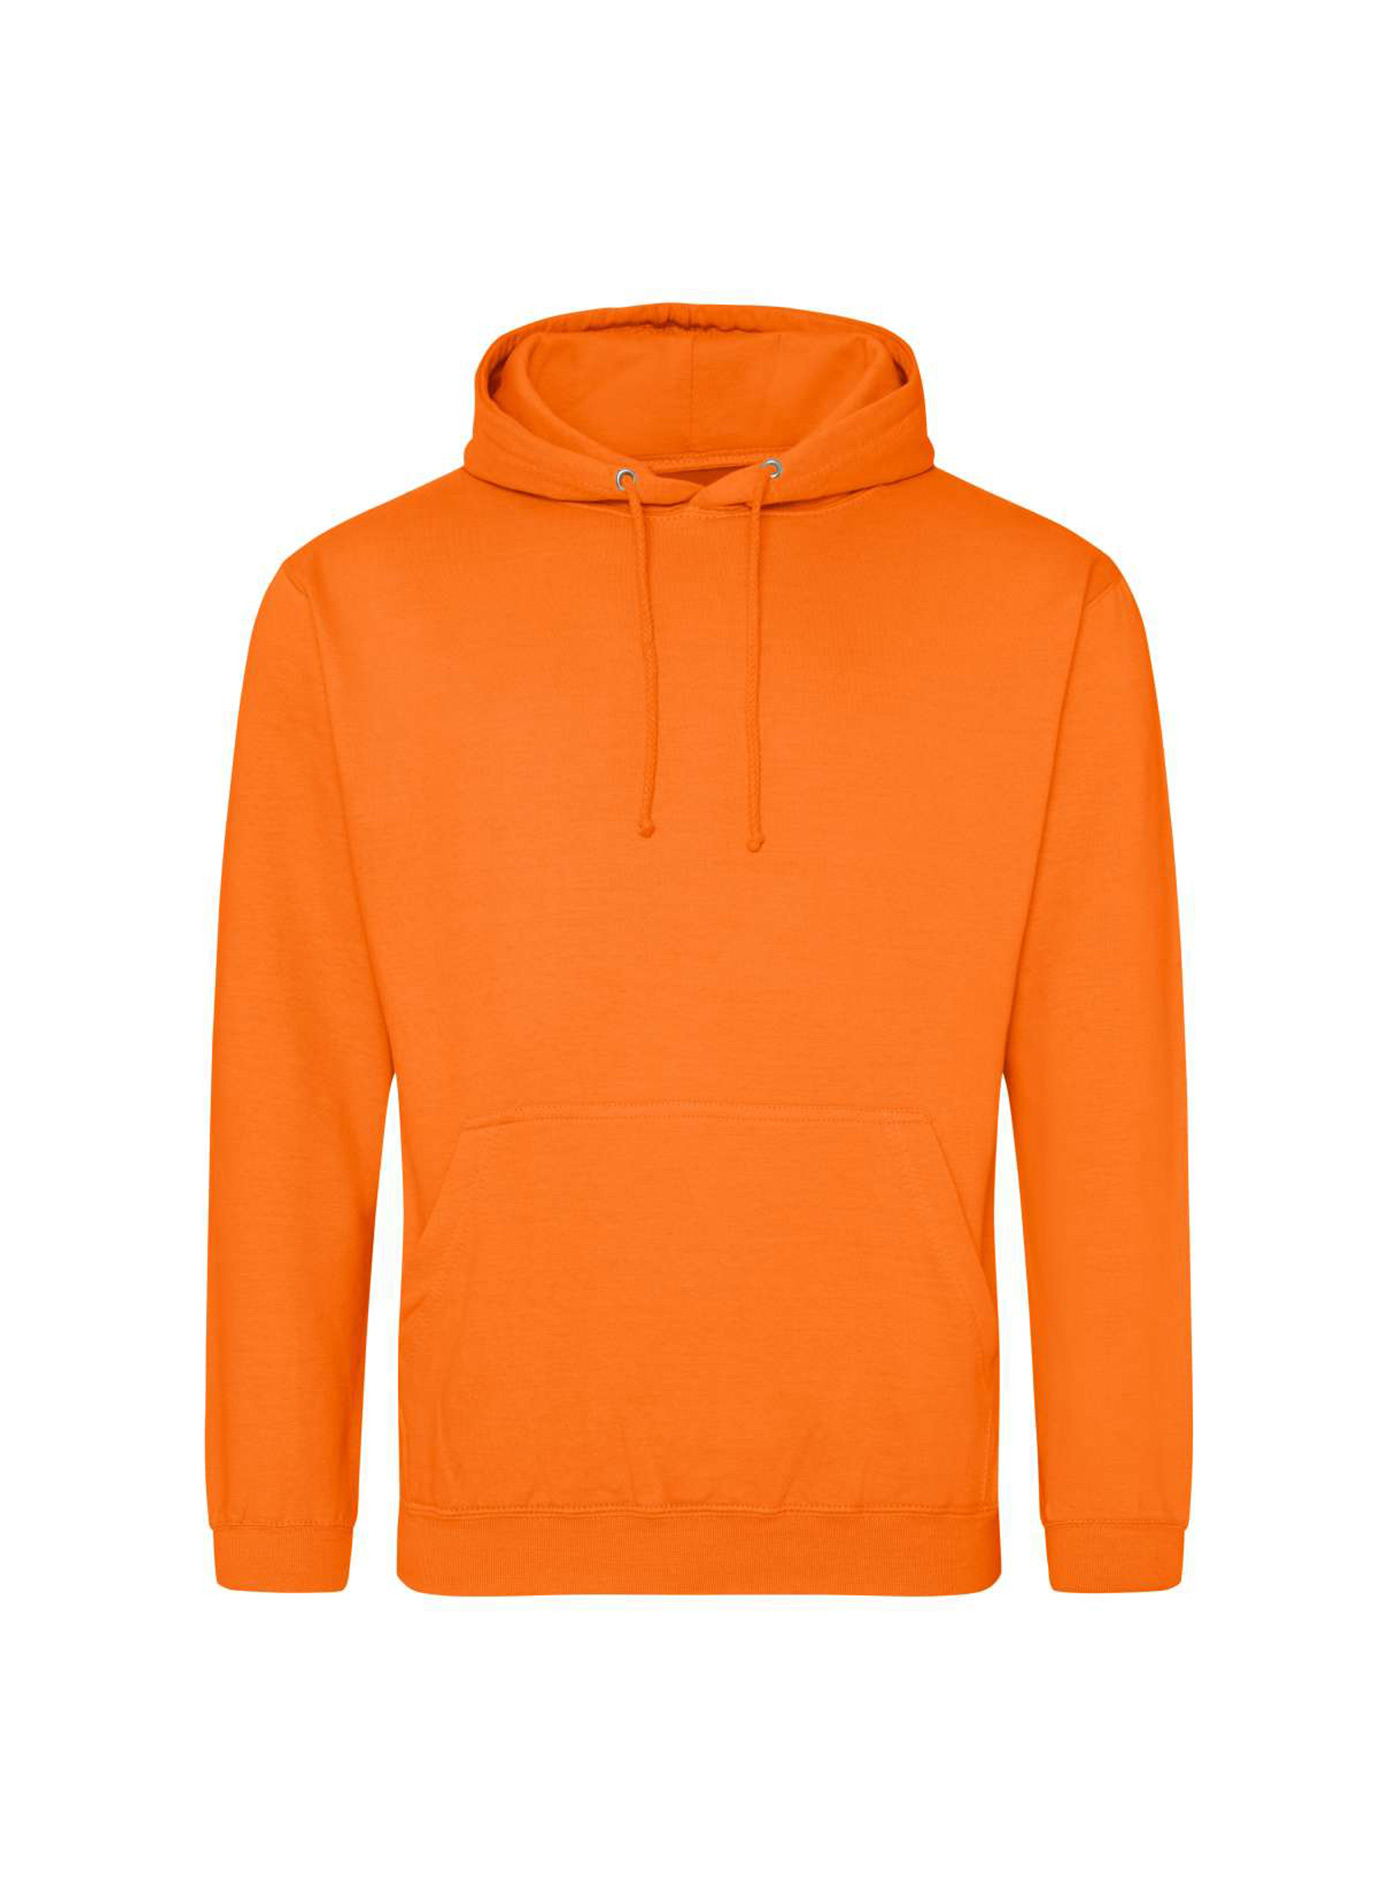 Mikina s kapucí unisex Just Hoods - Oranžová L